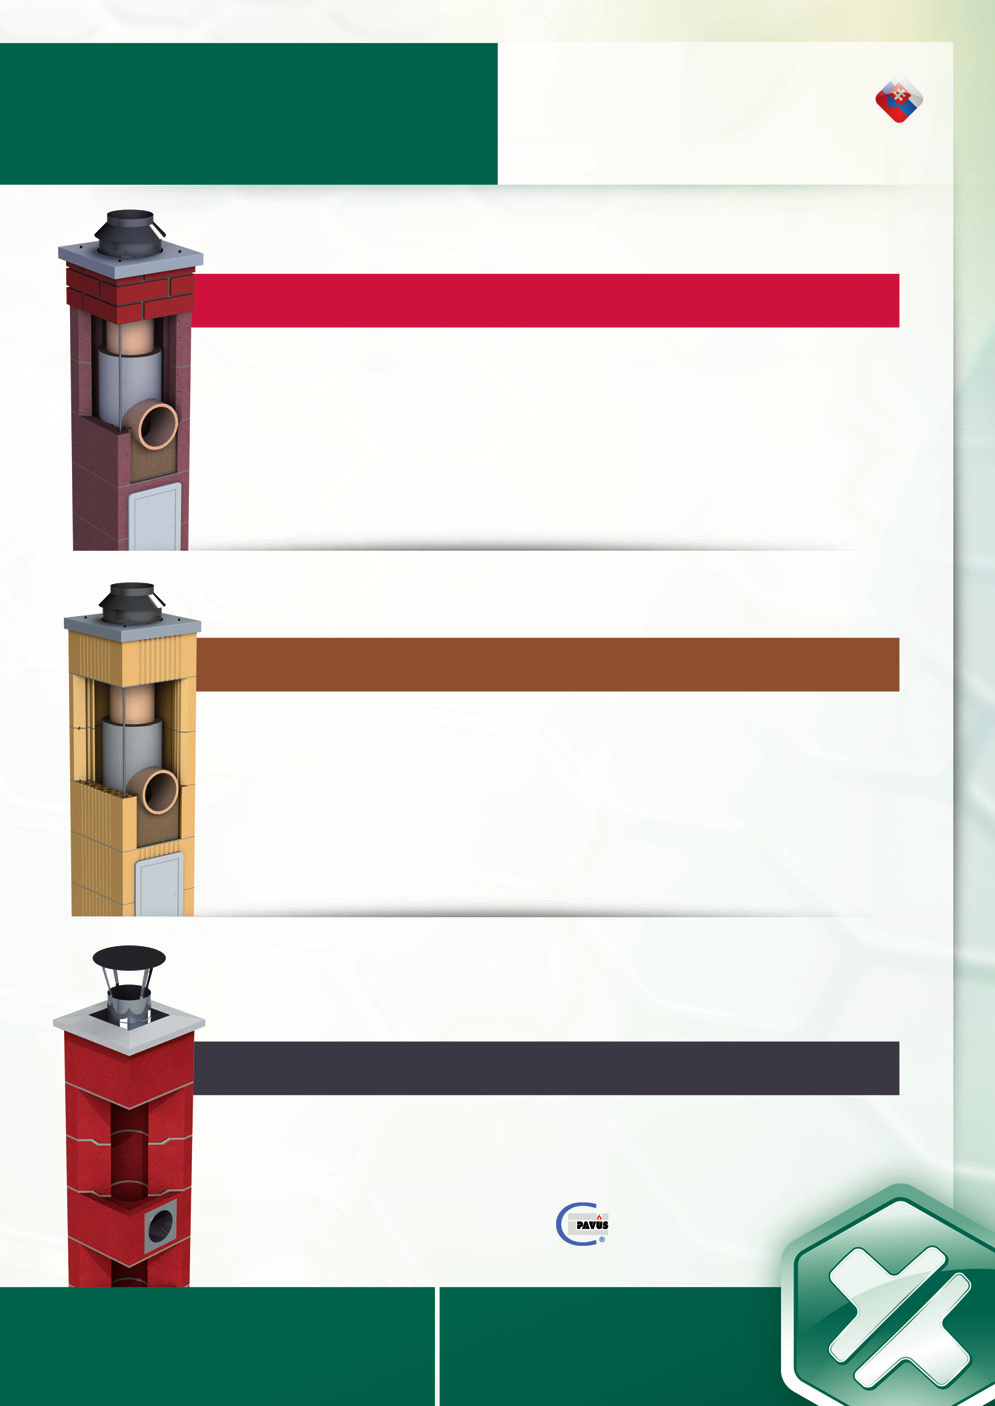 CENNÍK SK CLASSIC Trojzložkový komínový systém najvyššej kvality, tvorený presnou a ľahčenou keramzitbetónovou tvárnicou, špeciálnou tepelnou izoláciou a keramickou šamotovou vložkou.